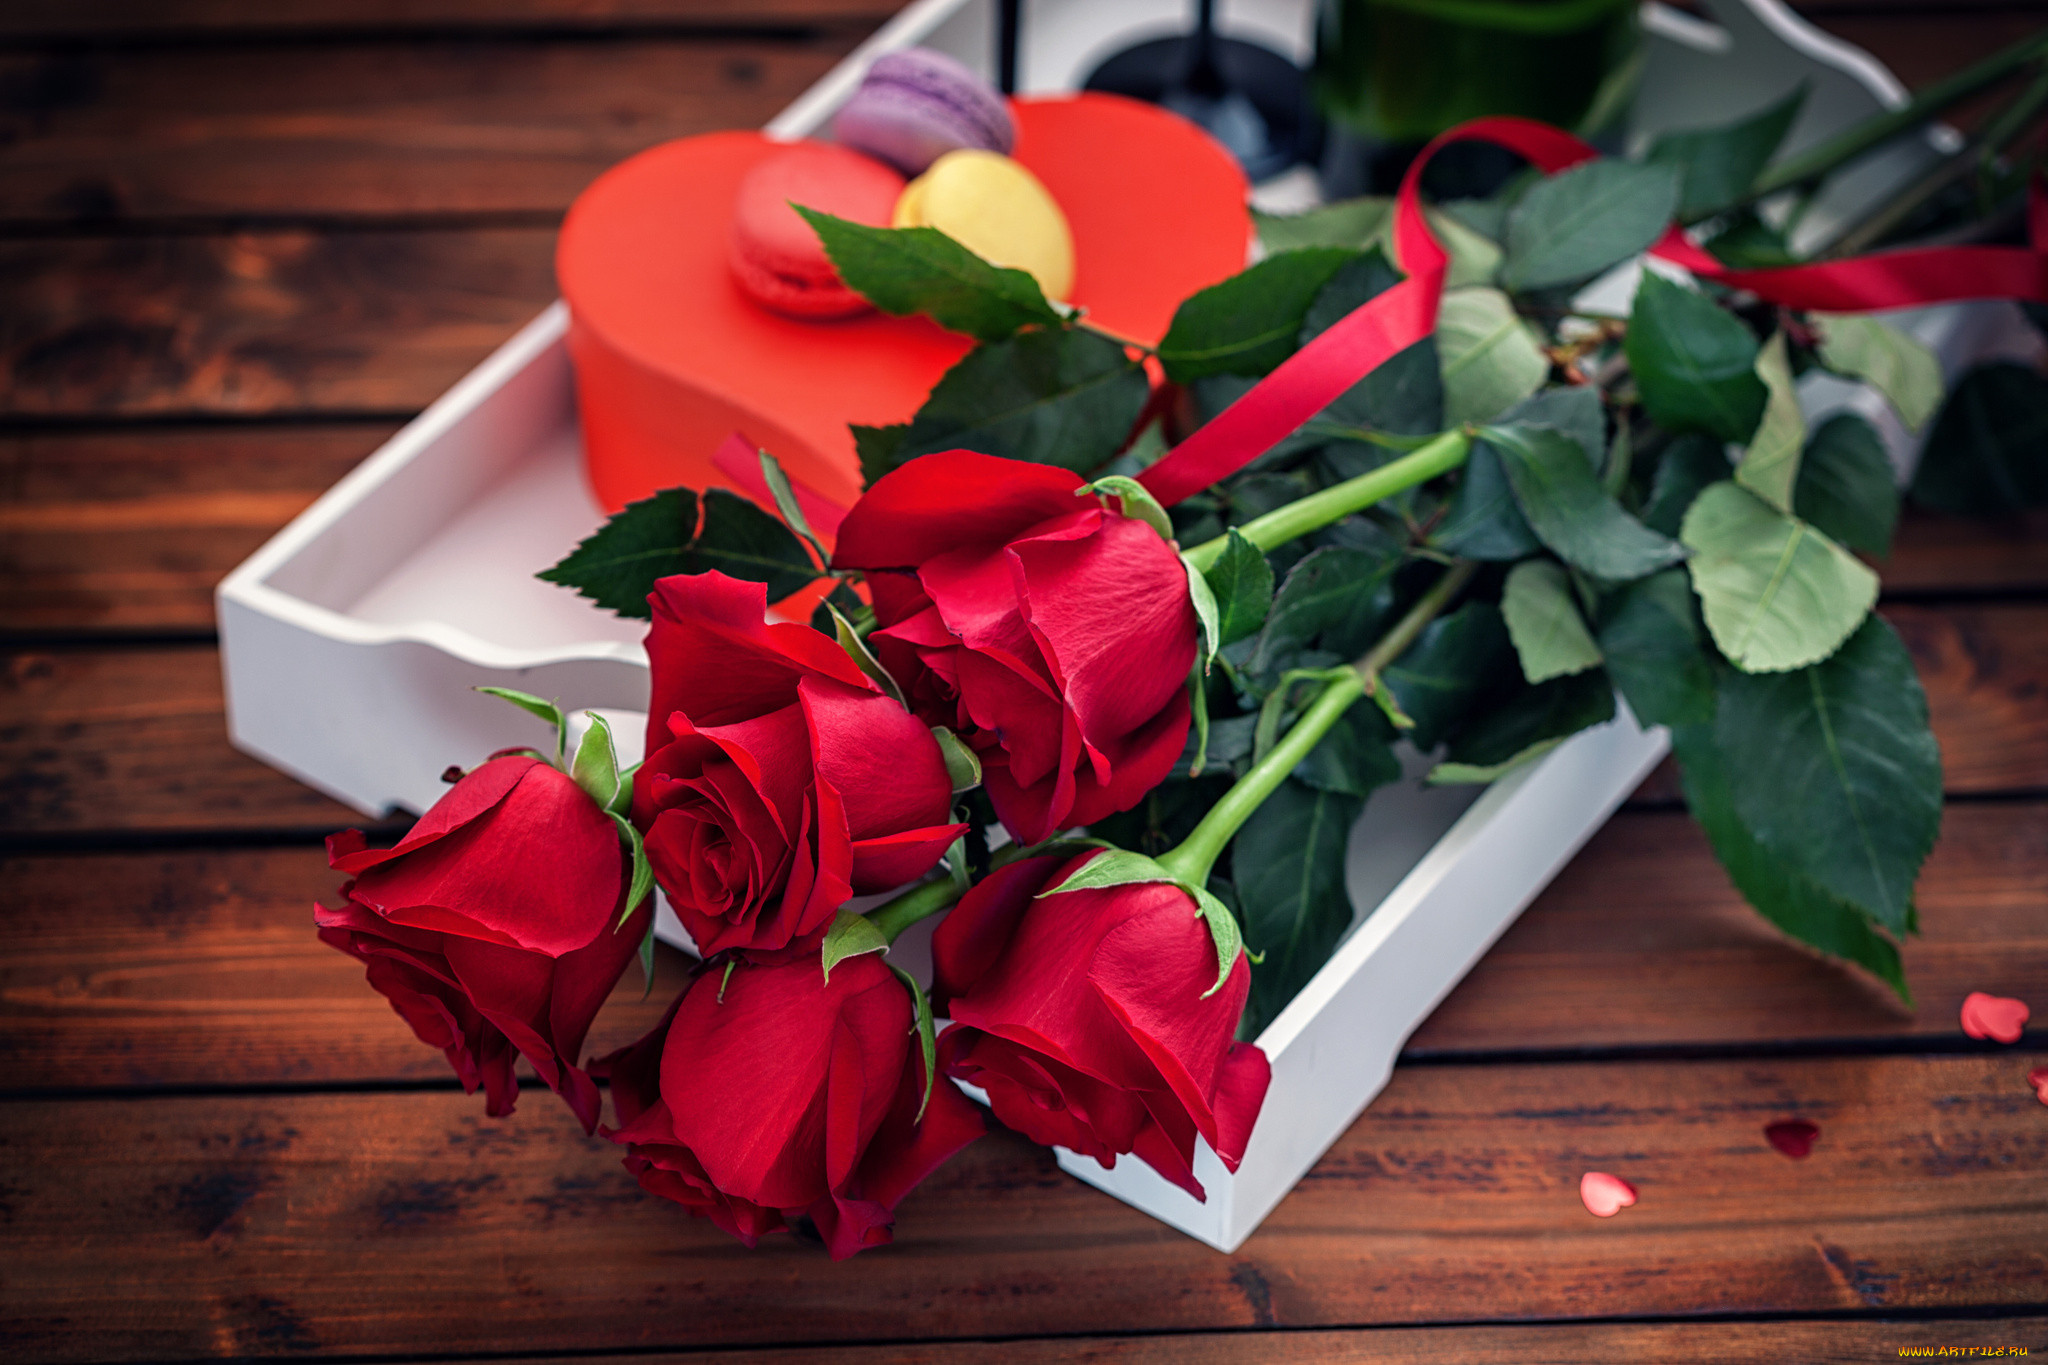 Картинка с цветами на столе. Красивый букет. Цветы в подарок. Красивый букет роз. Букет "день рождения".